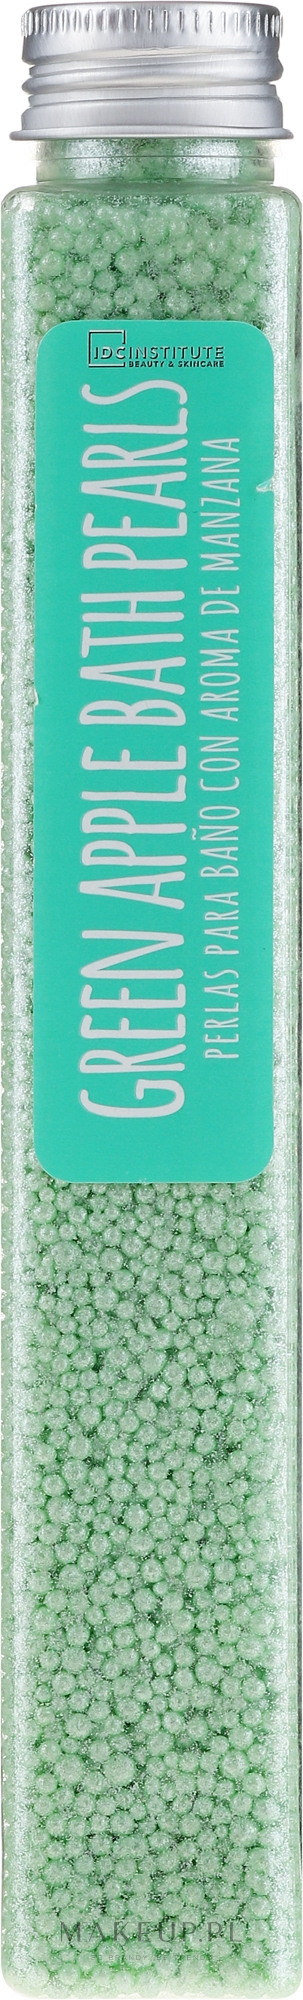 Perełki do kąpieli Zielone jabłko - IDC Institute Bath Pearls Green Apple — Zdjęcie 90 g